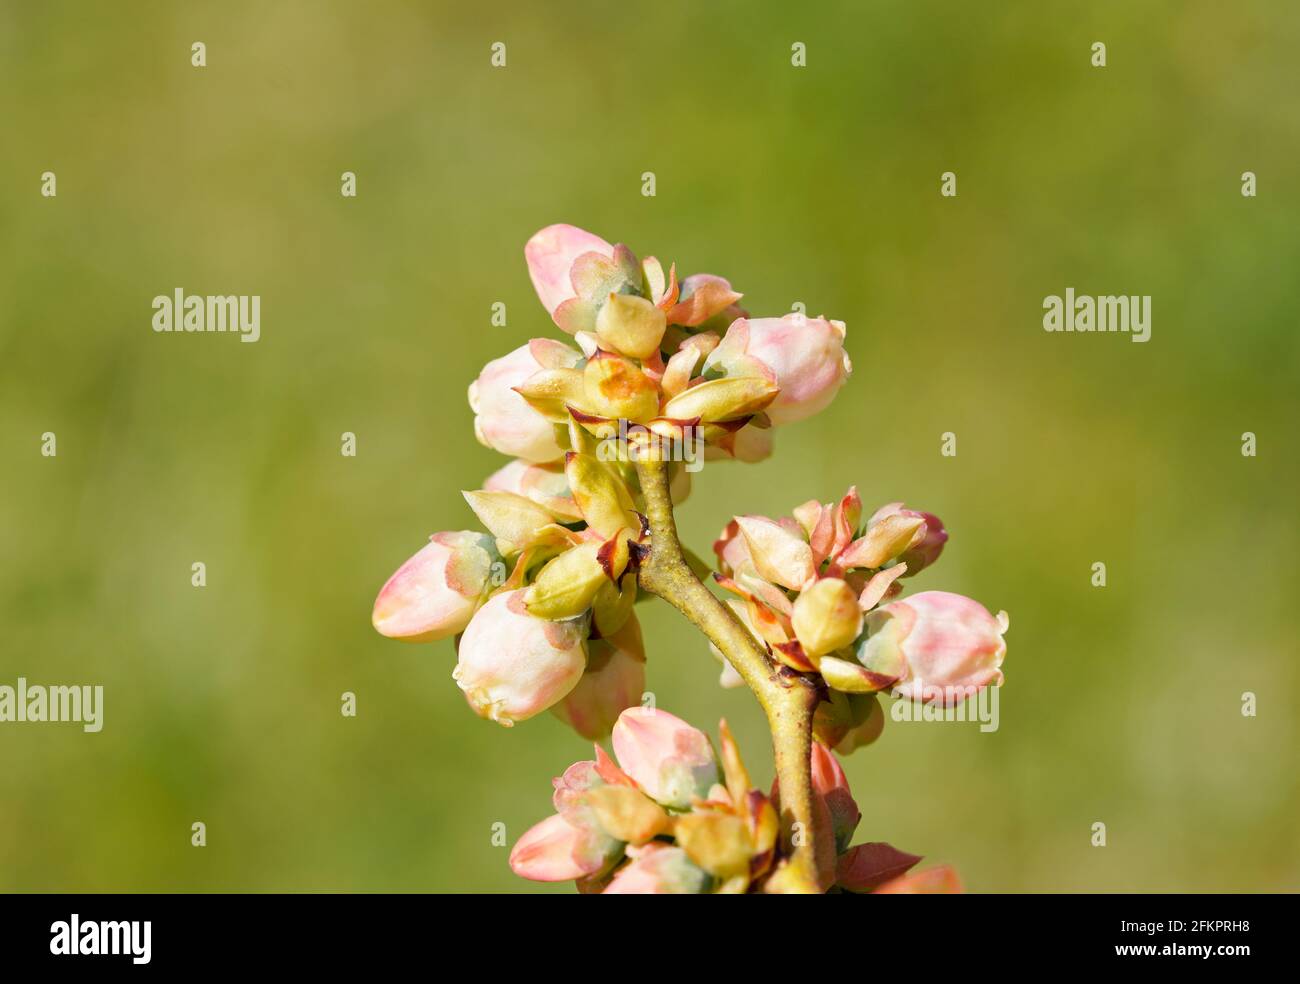 Nahaufnahme der Blüte einer Heidelbeere im Frühling. Knospen auf einem Fruchtbusch. Blühende Pflanzen. Grüner Hintergrund. Stockfoto